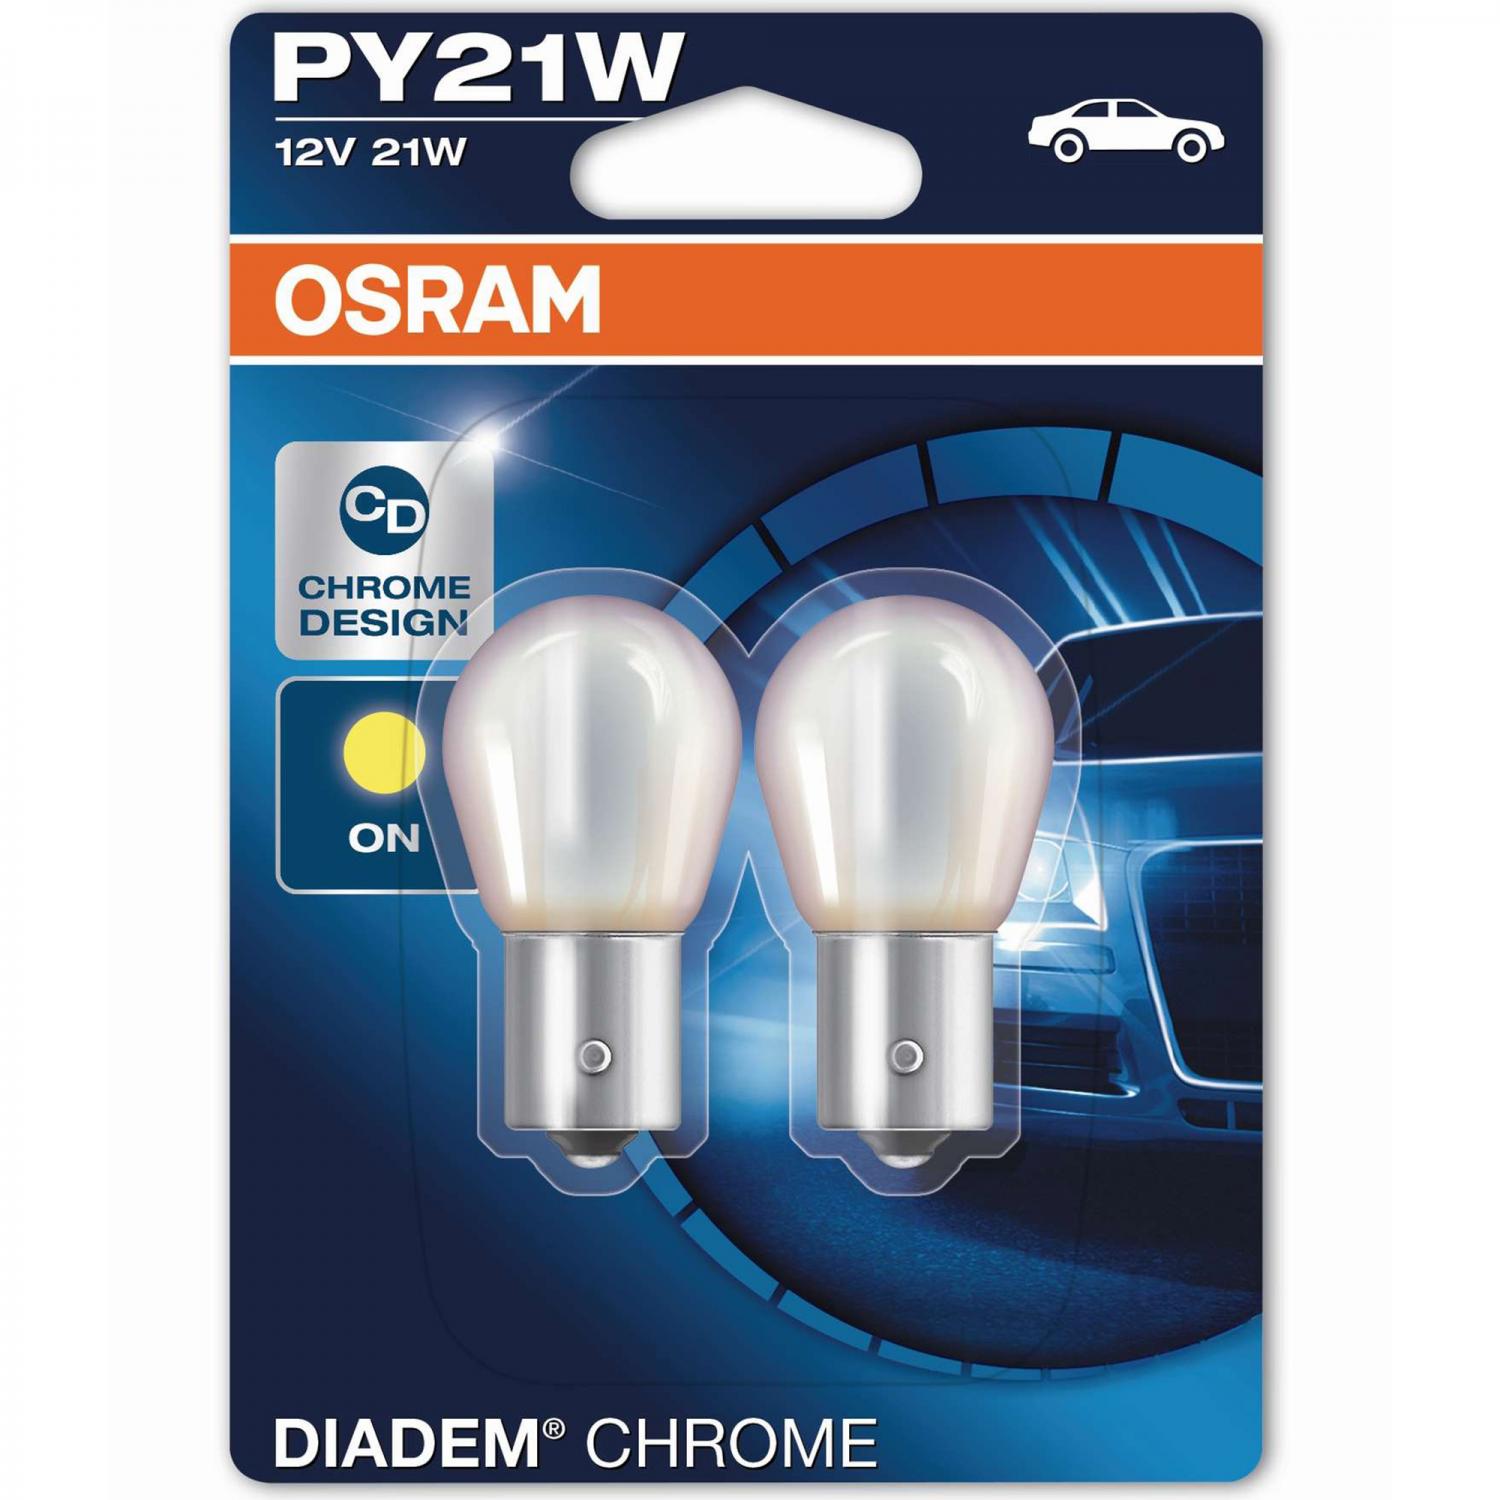 PY21W Diadem Chrome Orange BAU15s 12V OSRAM